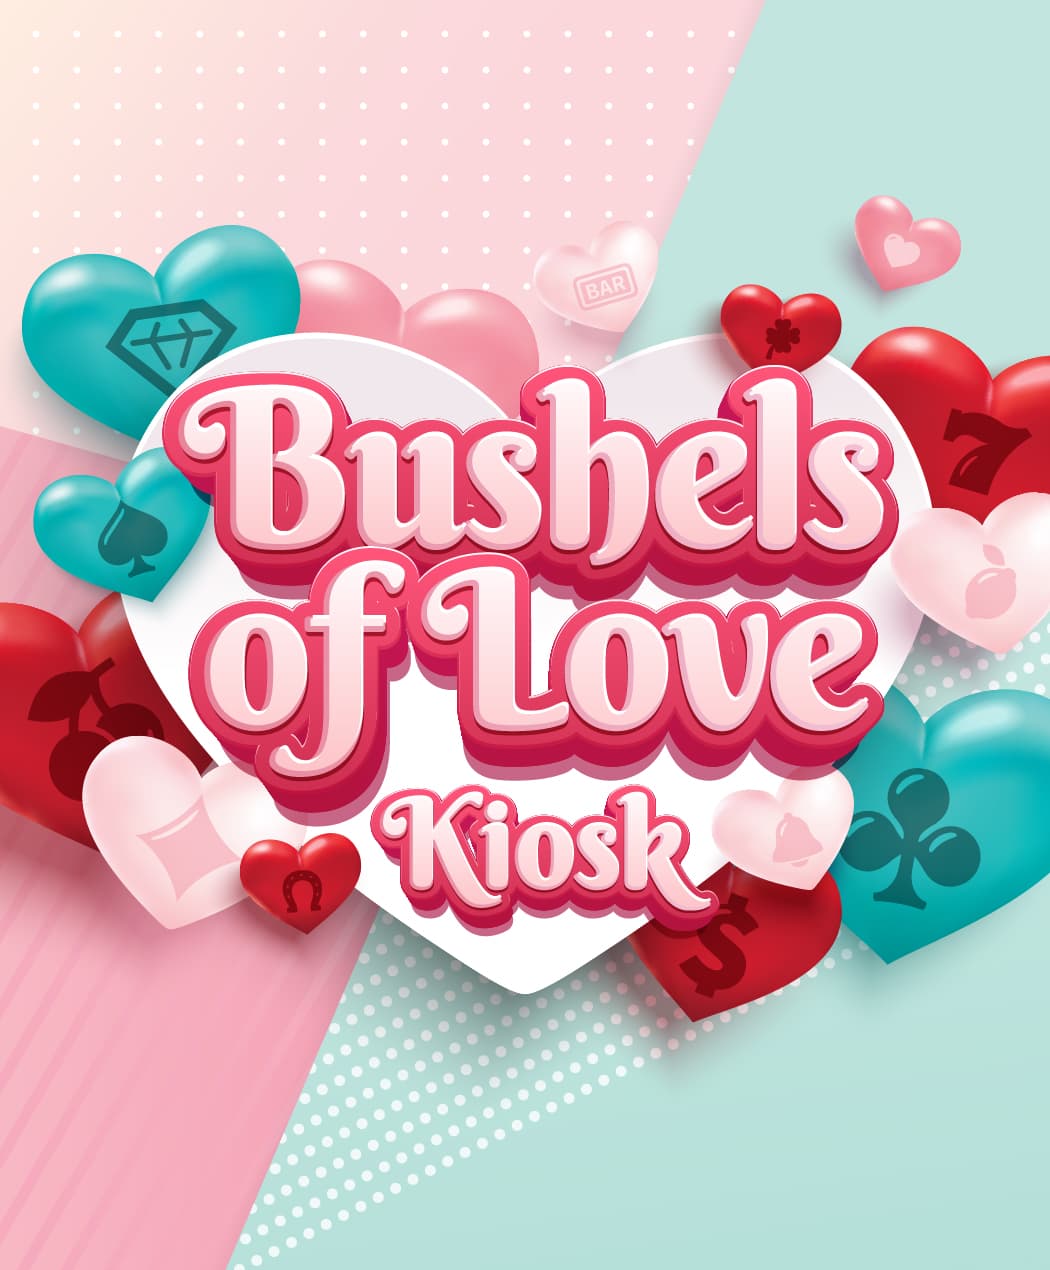 Bushels of Love Kiosk